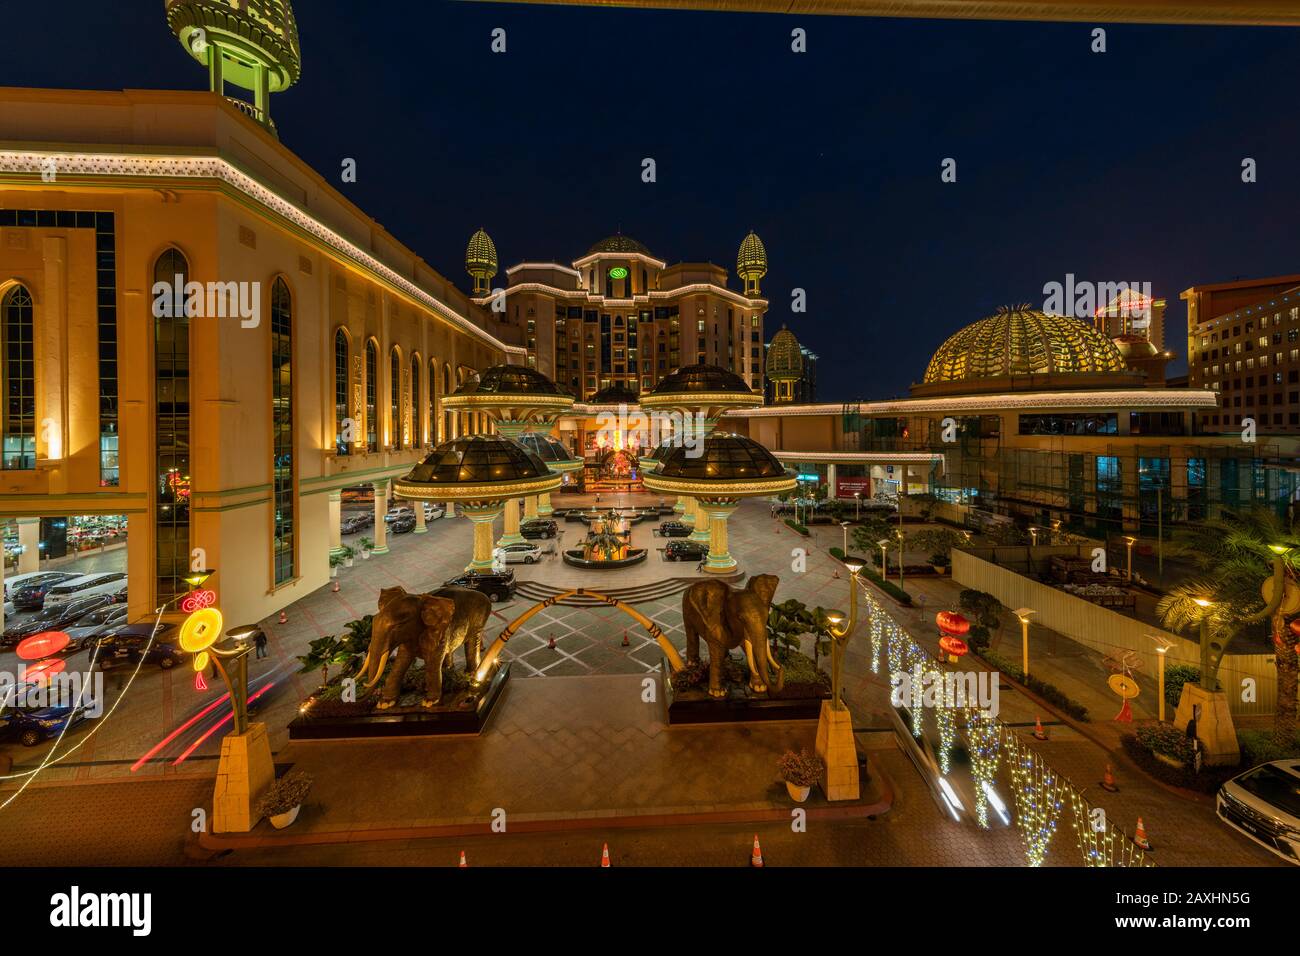 Sunway Resort and Hotel at Sunway Pyramid Mall in Selangor, Malaysia. Das Einkaufszentrum ist ein ägyptisches Einkaufszentrum. Stockfoto